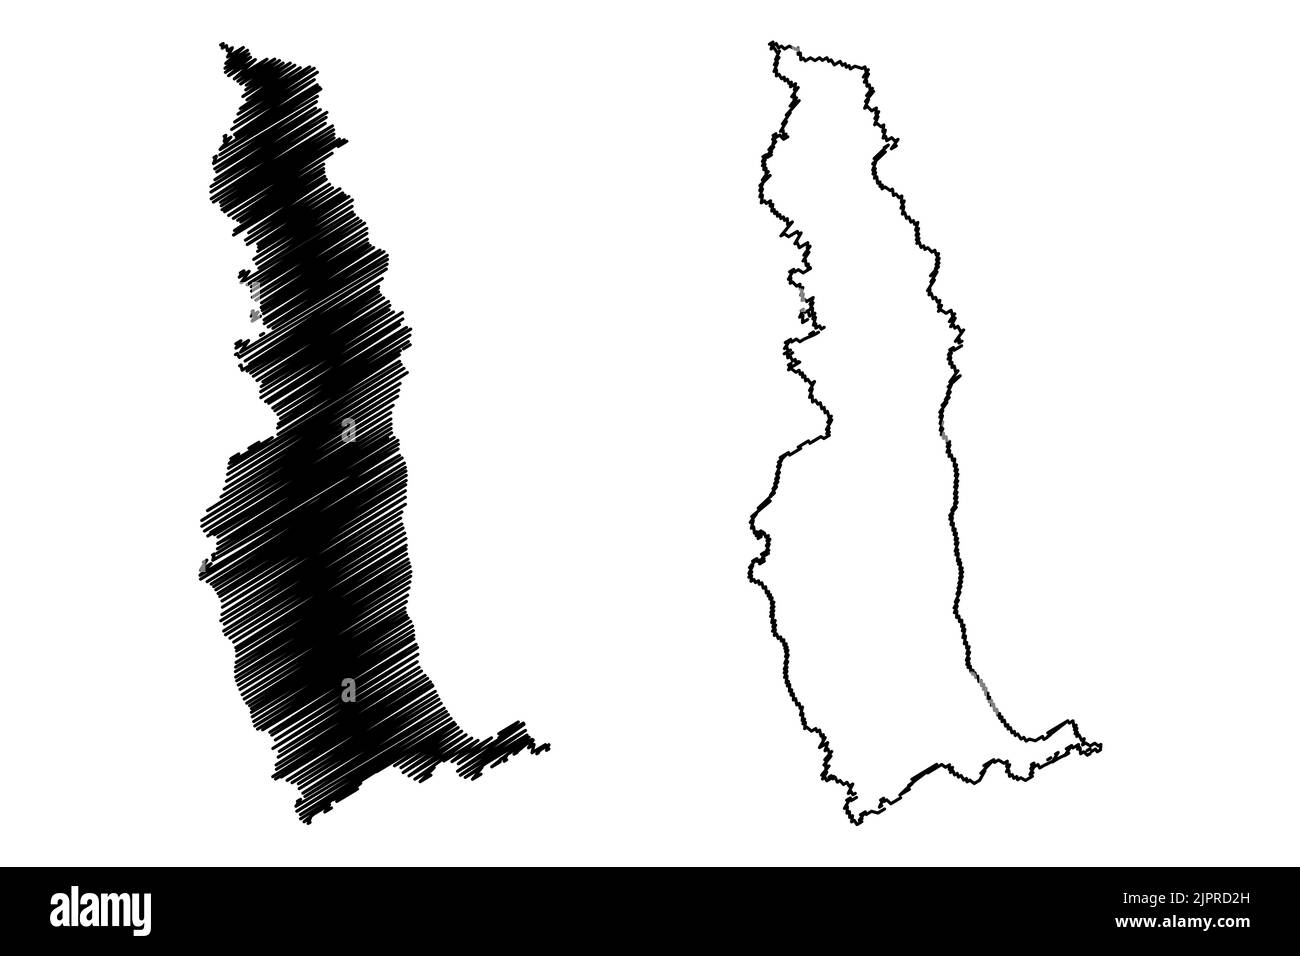 Lundy Island (Vereinigtes Königreich von Großbritannien und Nordirland, England) Kartenvektordarstellung, Scribble-Skizze Isle of Lundy-Karte Stock Vektor